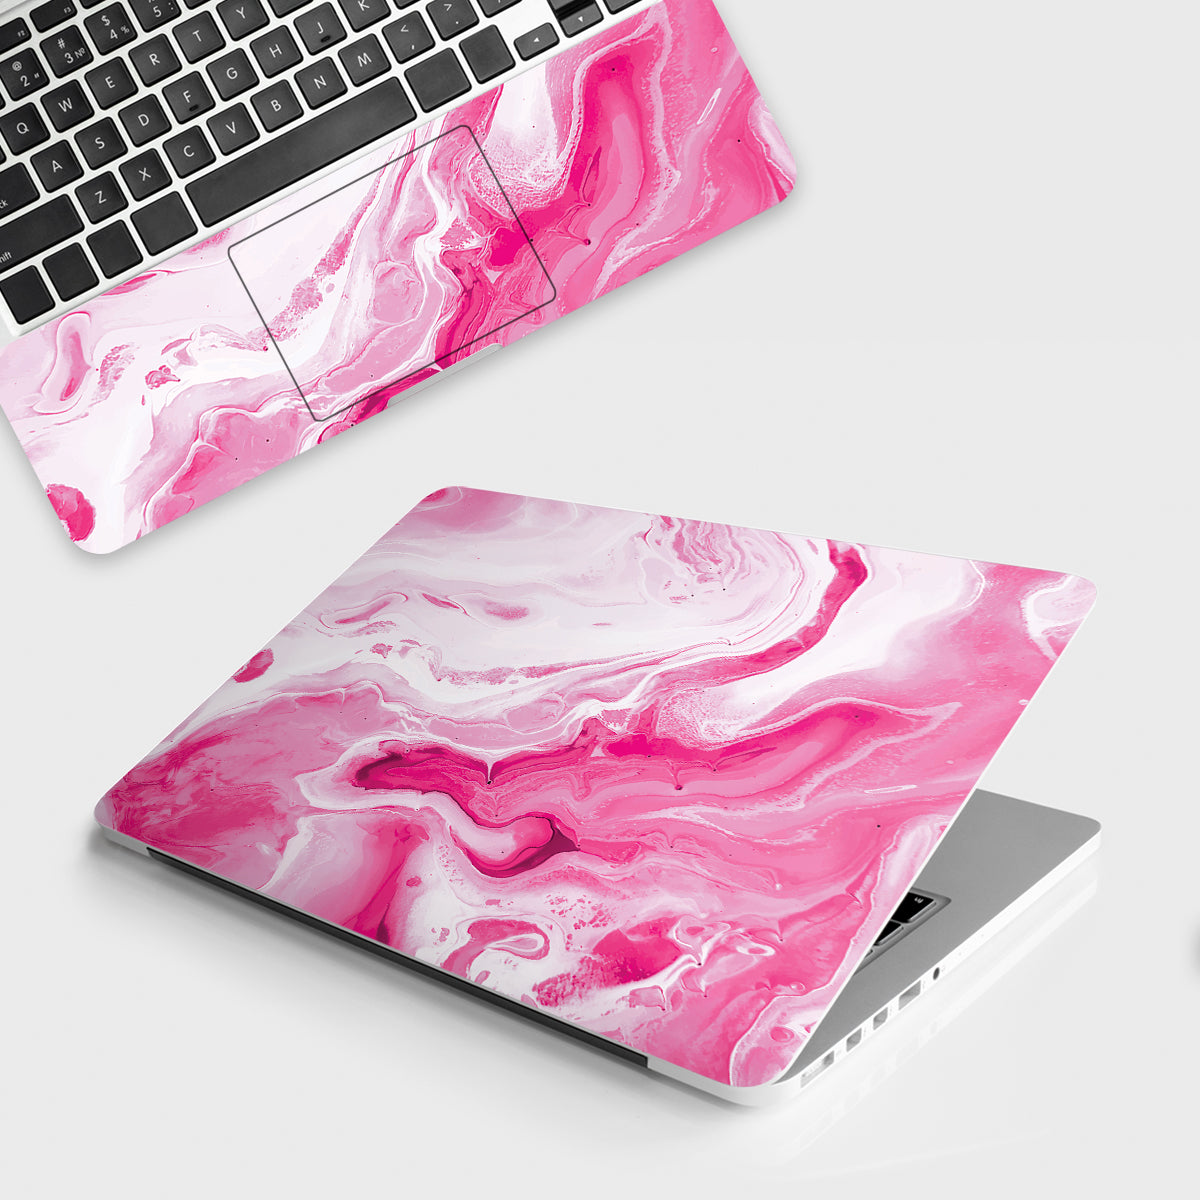 Fomo Store Laptop Skins Marble Pink